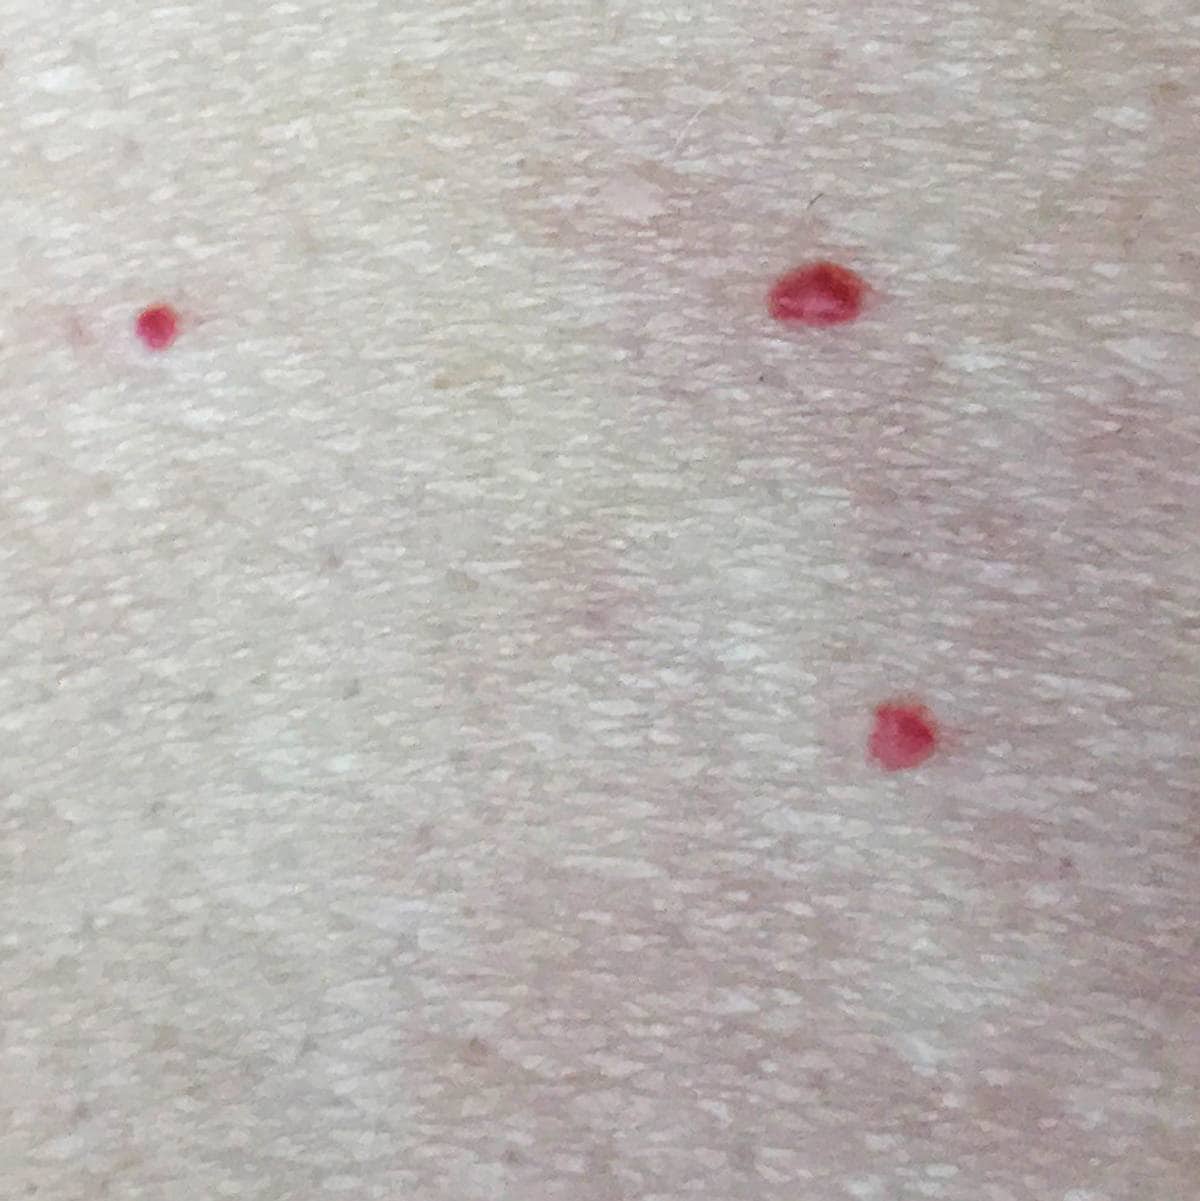 Bitte små røde prikker under huden